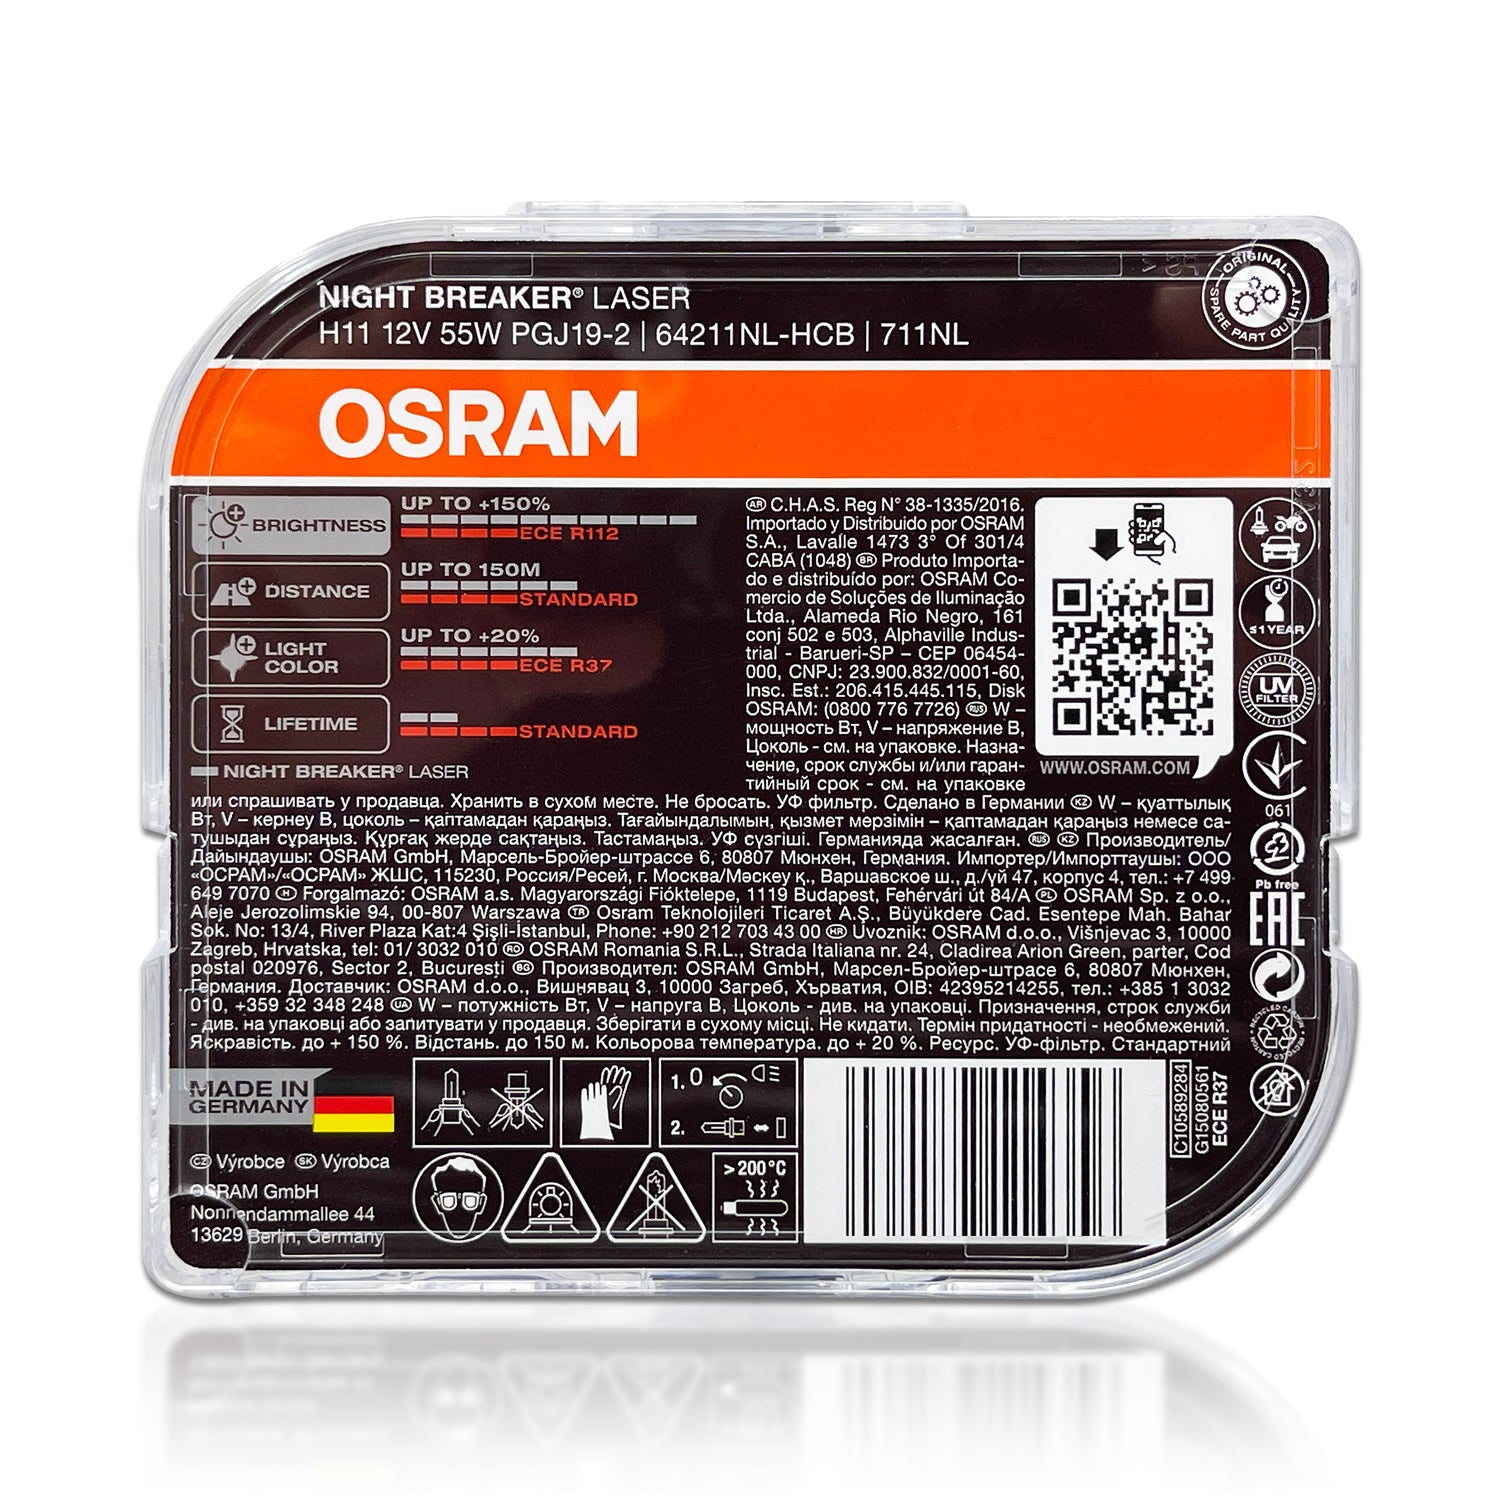 OSRAM H11 Night Breaker Unlimited +110% Halogen Bulb